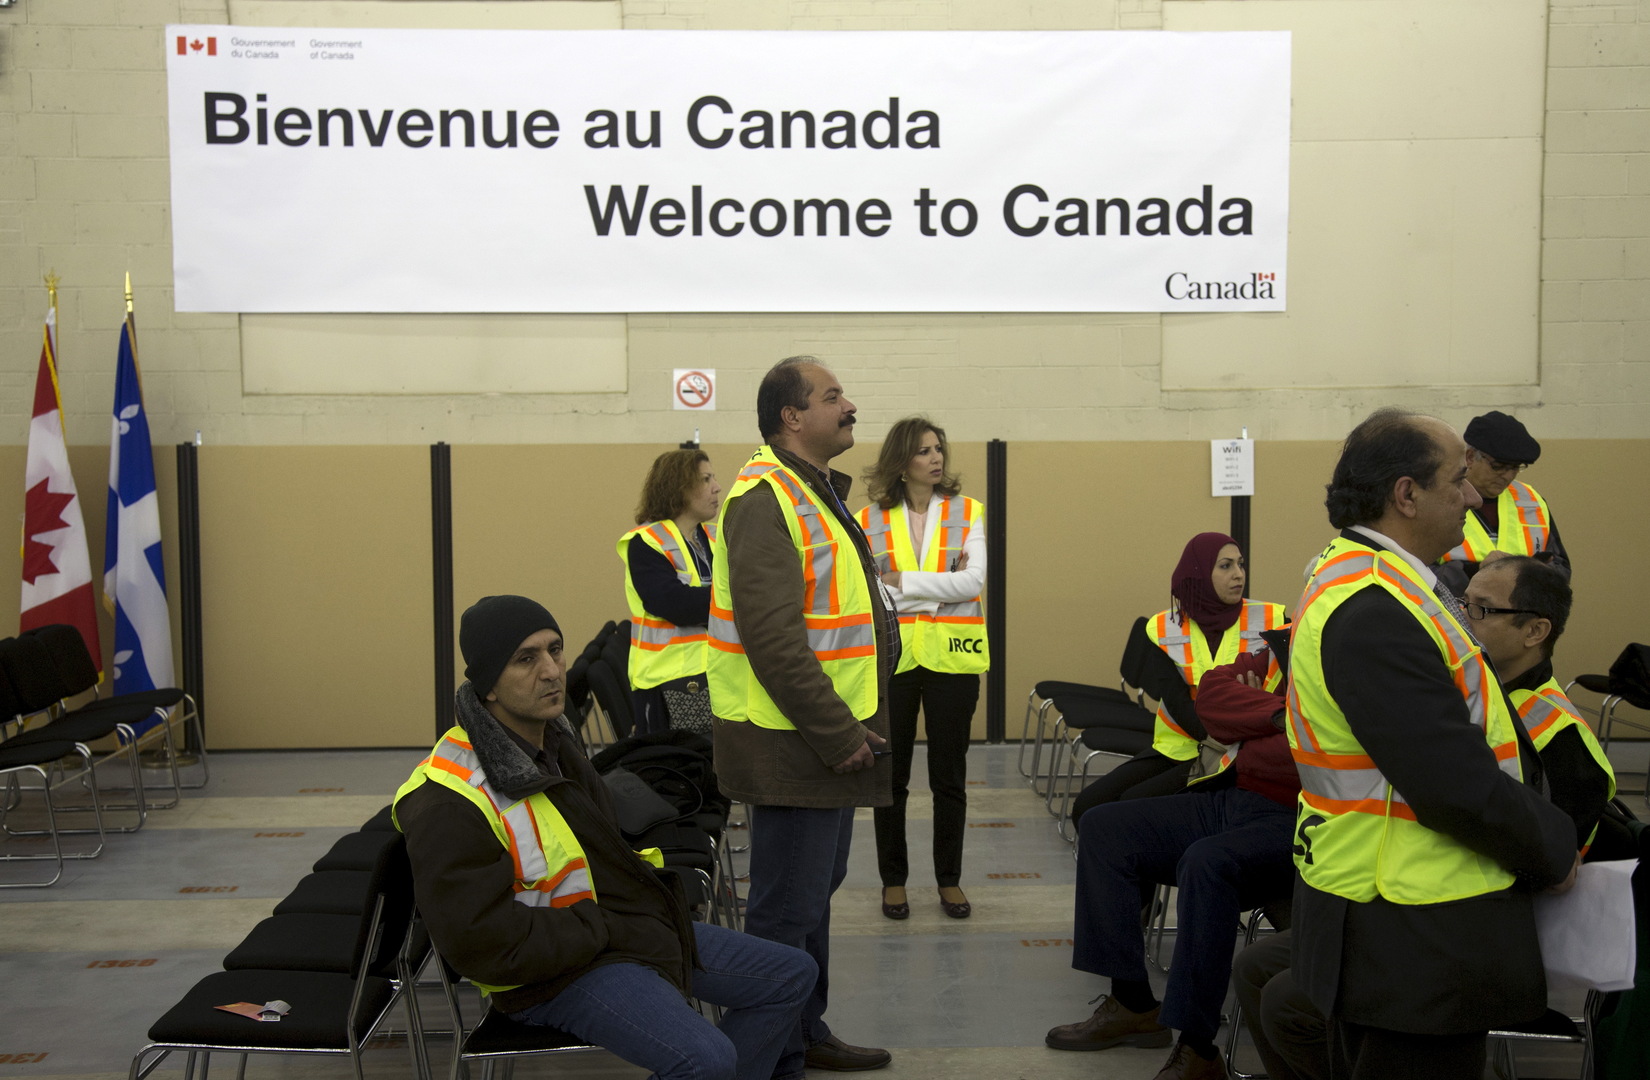 سلطات كندا تعتزم استقدام أكثر من مليون مهاجر خلال 3 سنوات